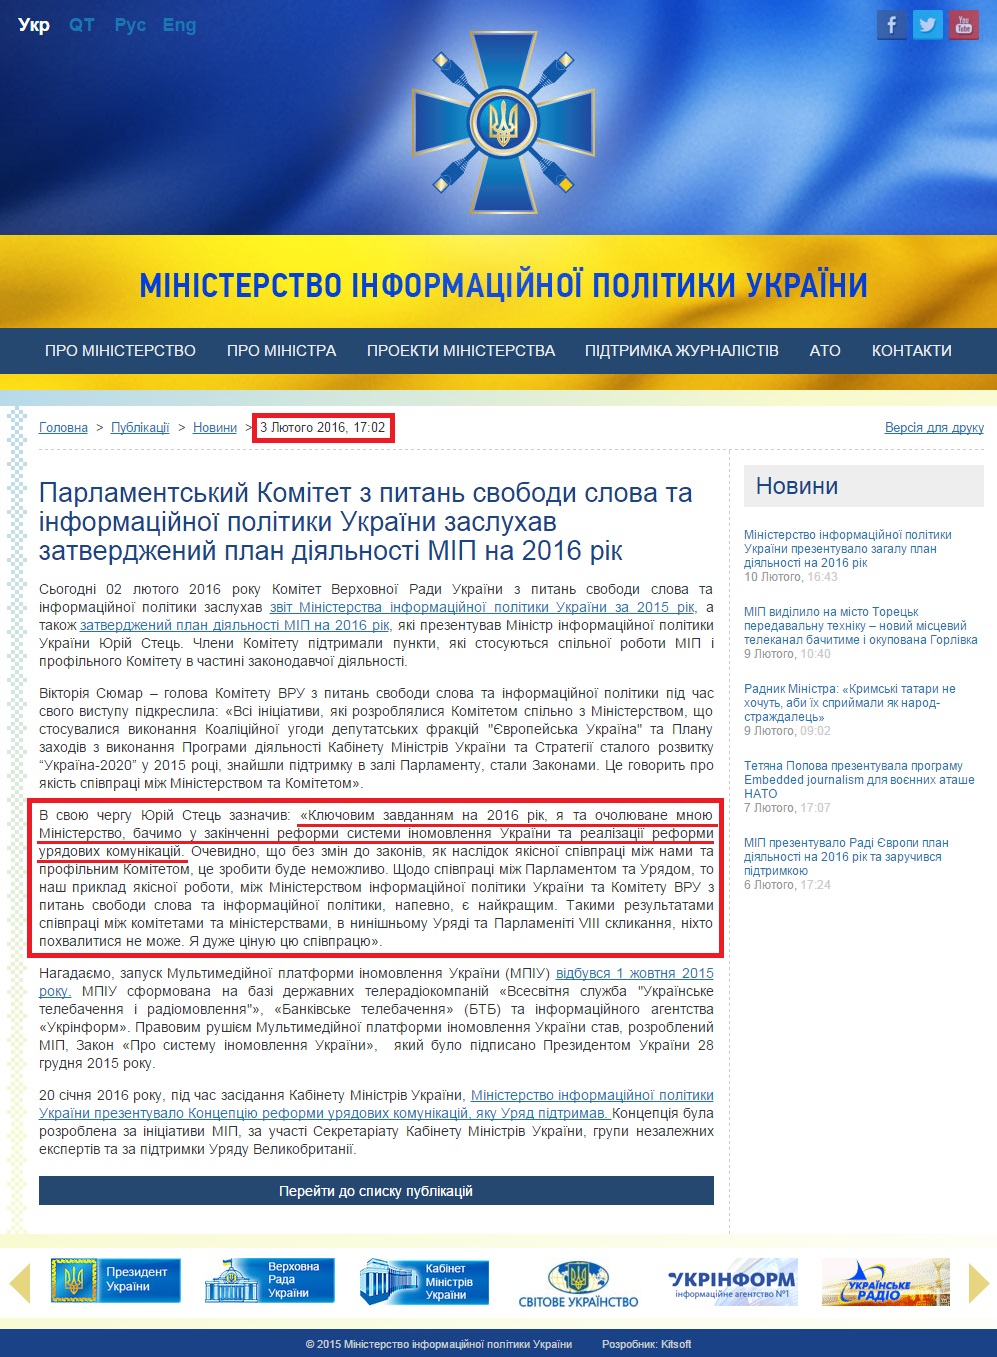 http://mip.gov.ua/news/925.html